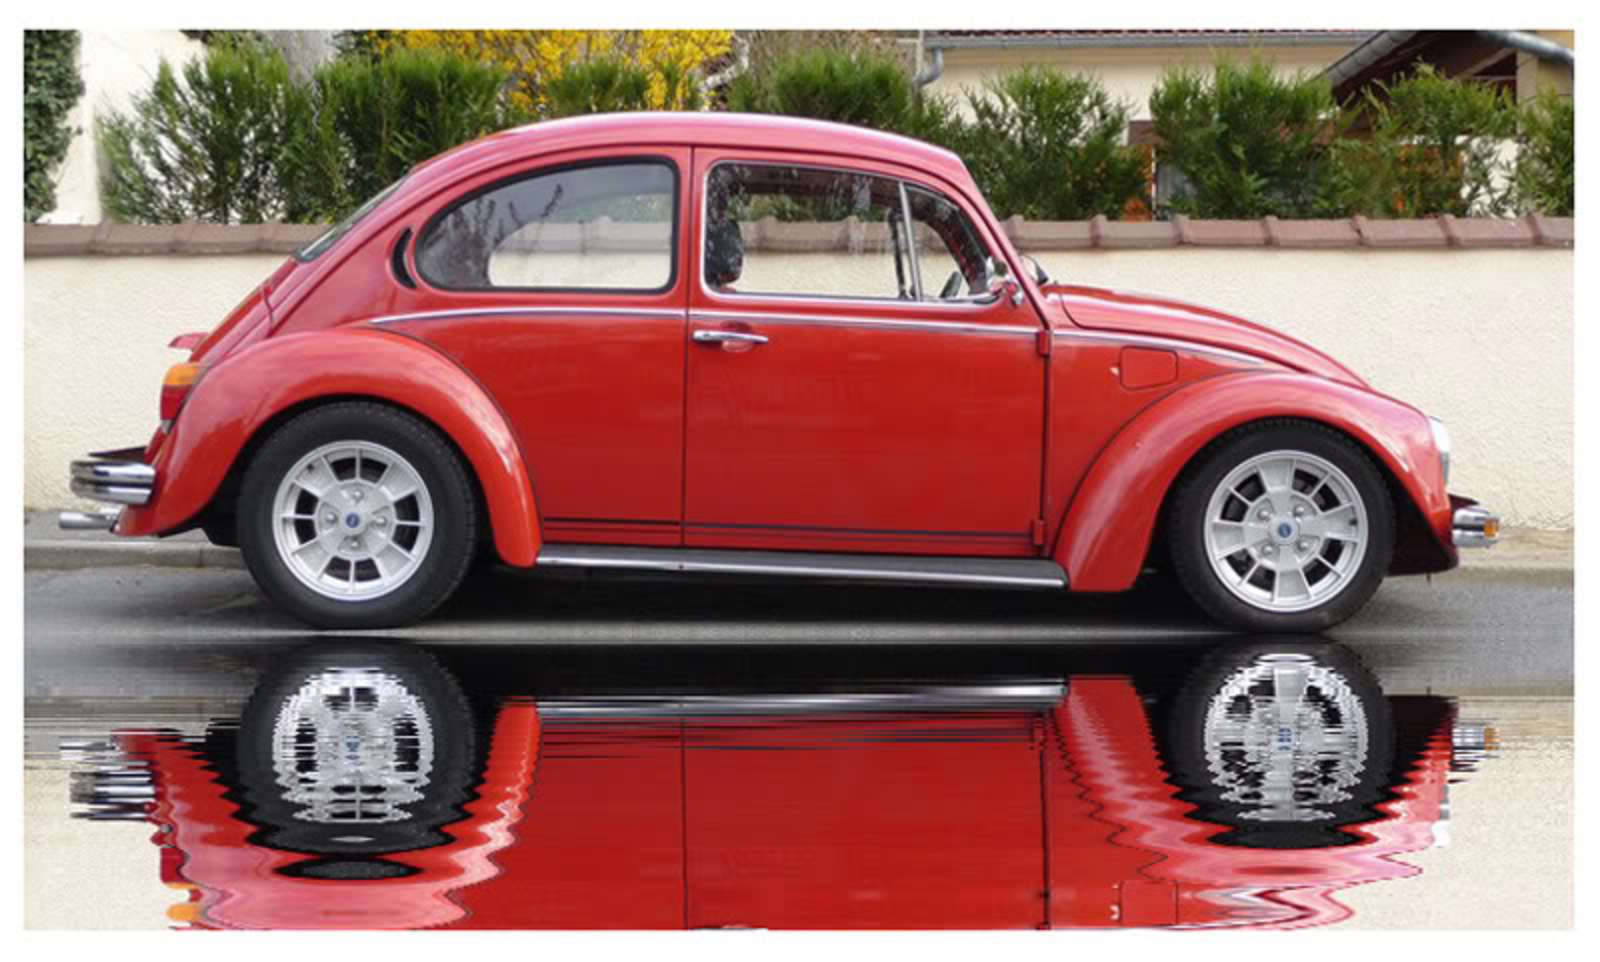 Volkswagen Typ 1 1300 Convertible. View Download Wallpaper. 800x481